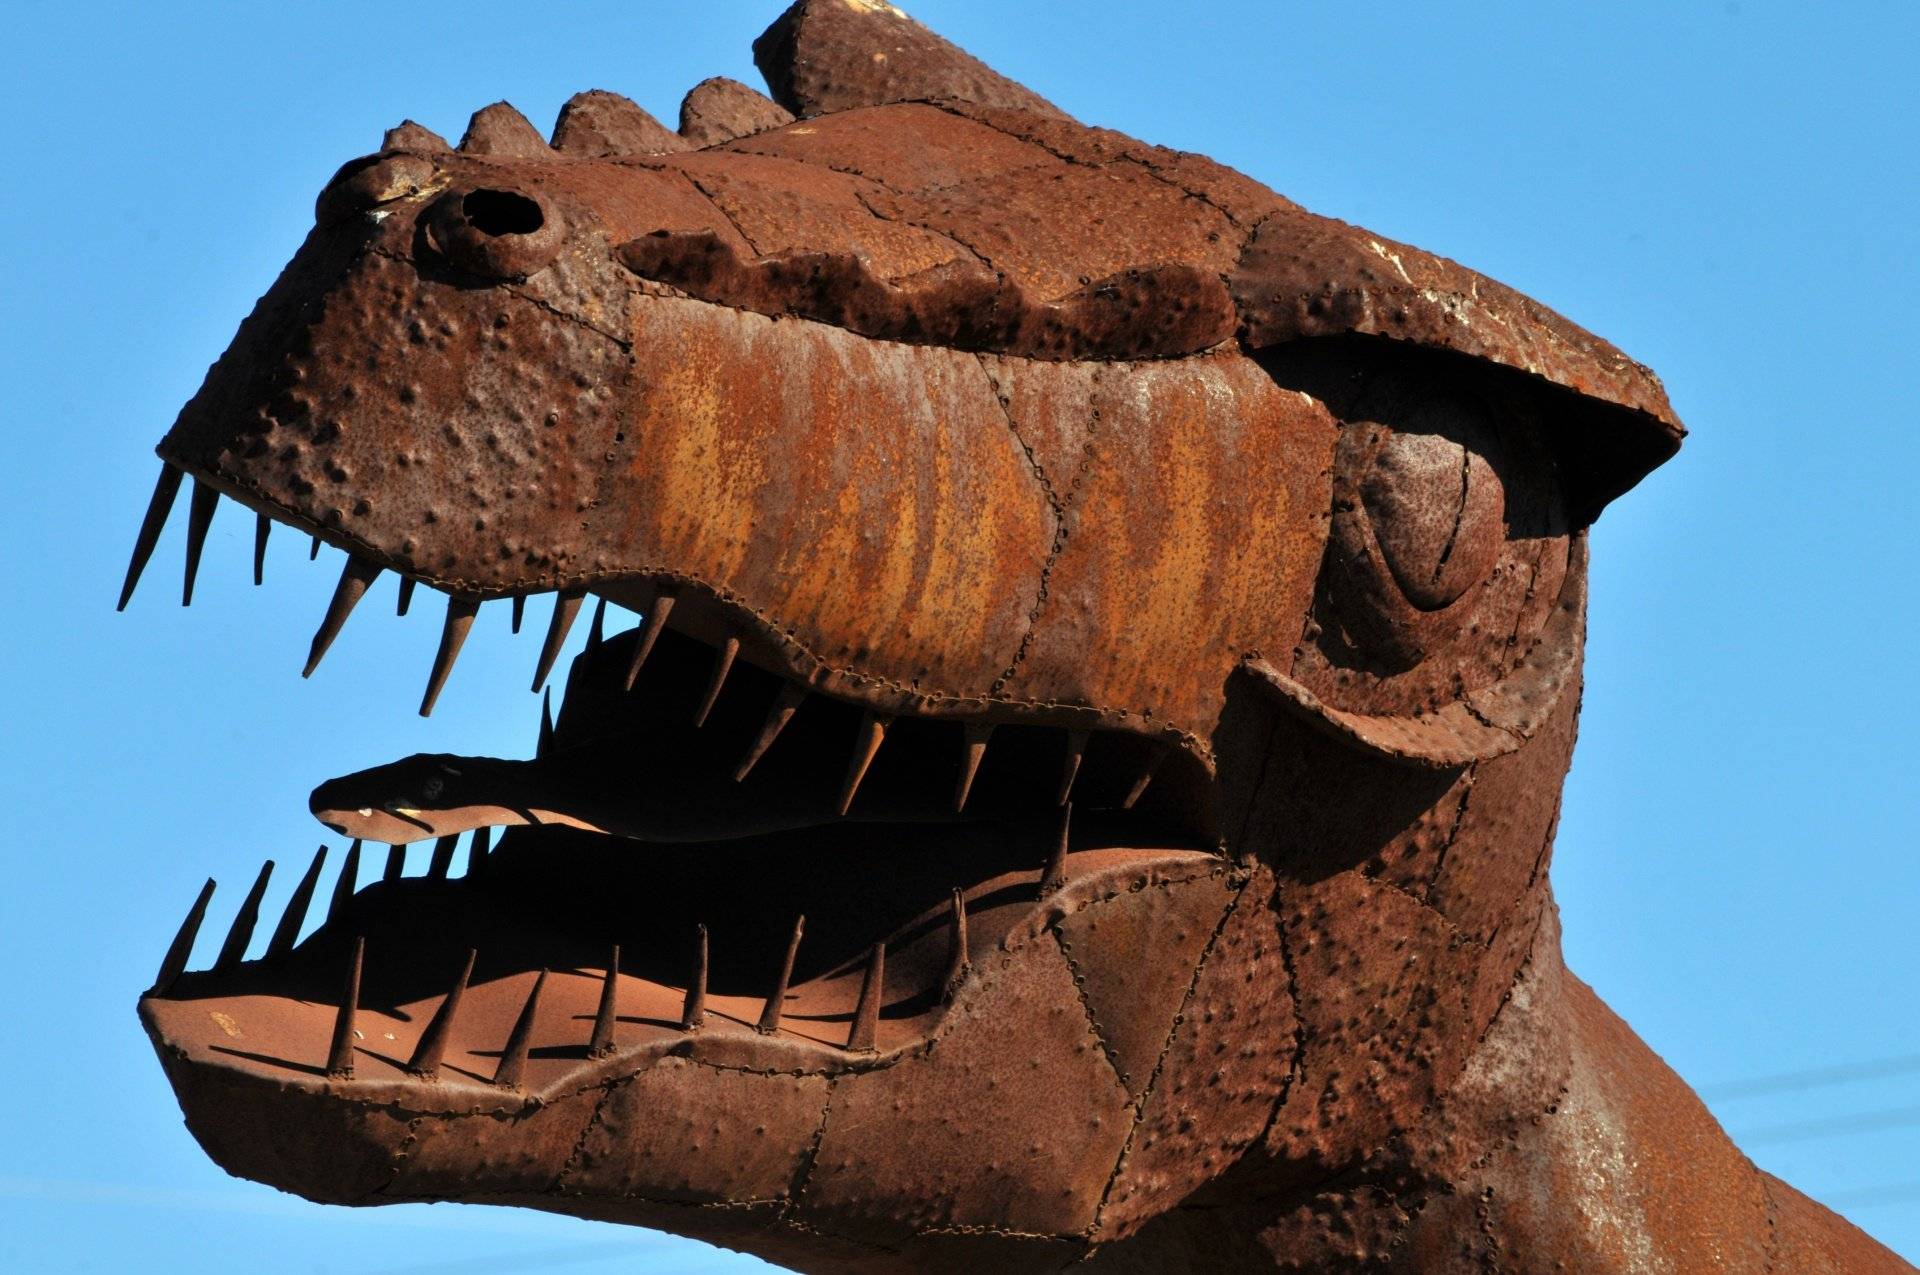 Głowa dinozaura wykonana z żelaznej blachy